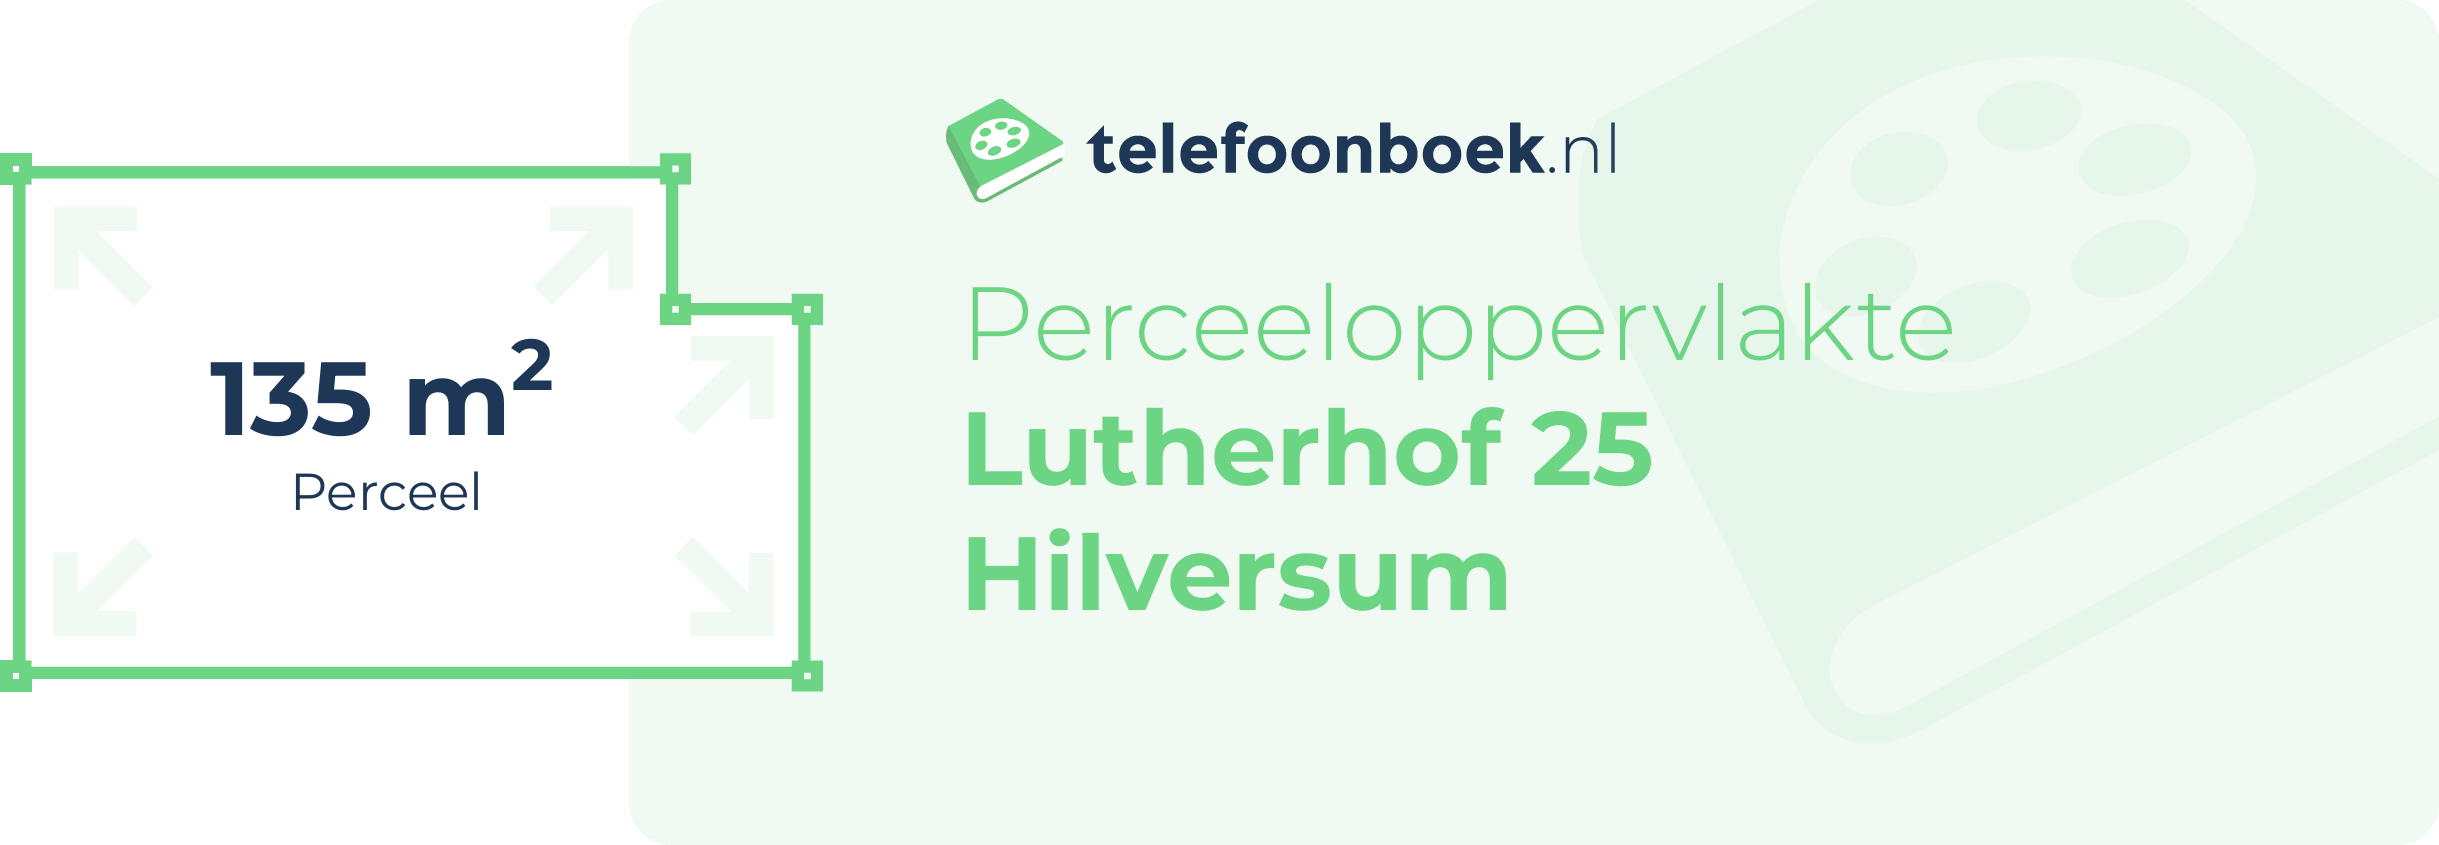 Perceeloppervlakte Lutherhof 25 Hilversum